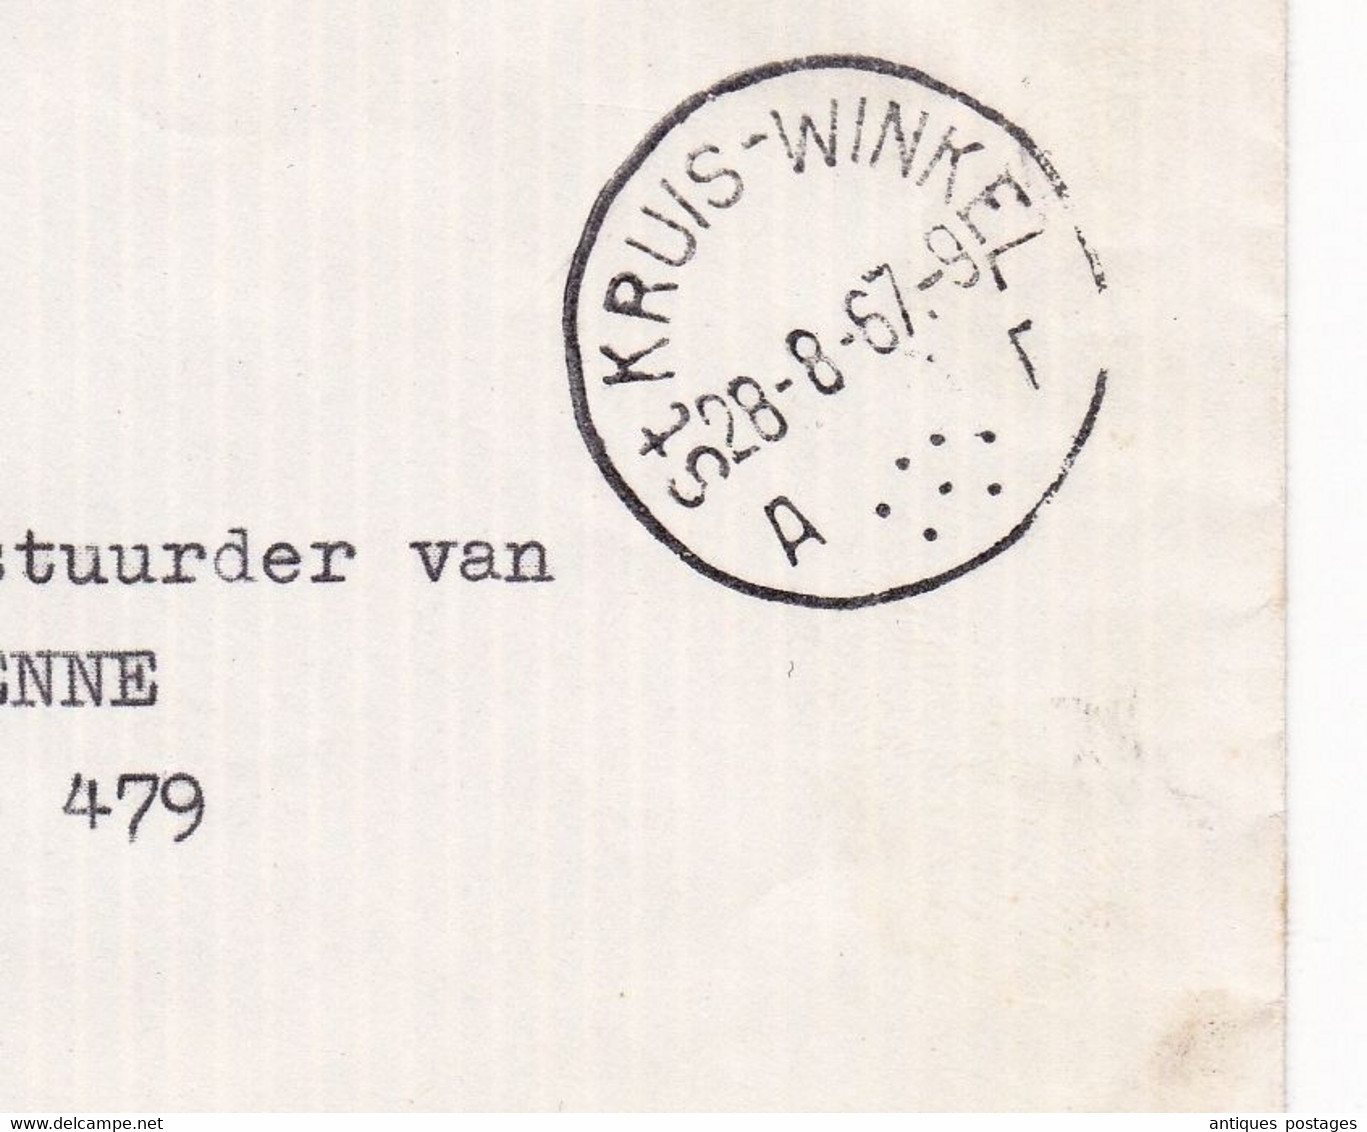 Lettre Sint-Kruis-Winkel 1967 Winkel-Sainte-Croix Waelput Van Acker En Zonen Belgique Brussel Bruxelles - Covers & Documents